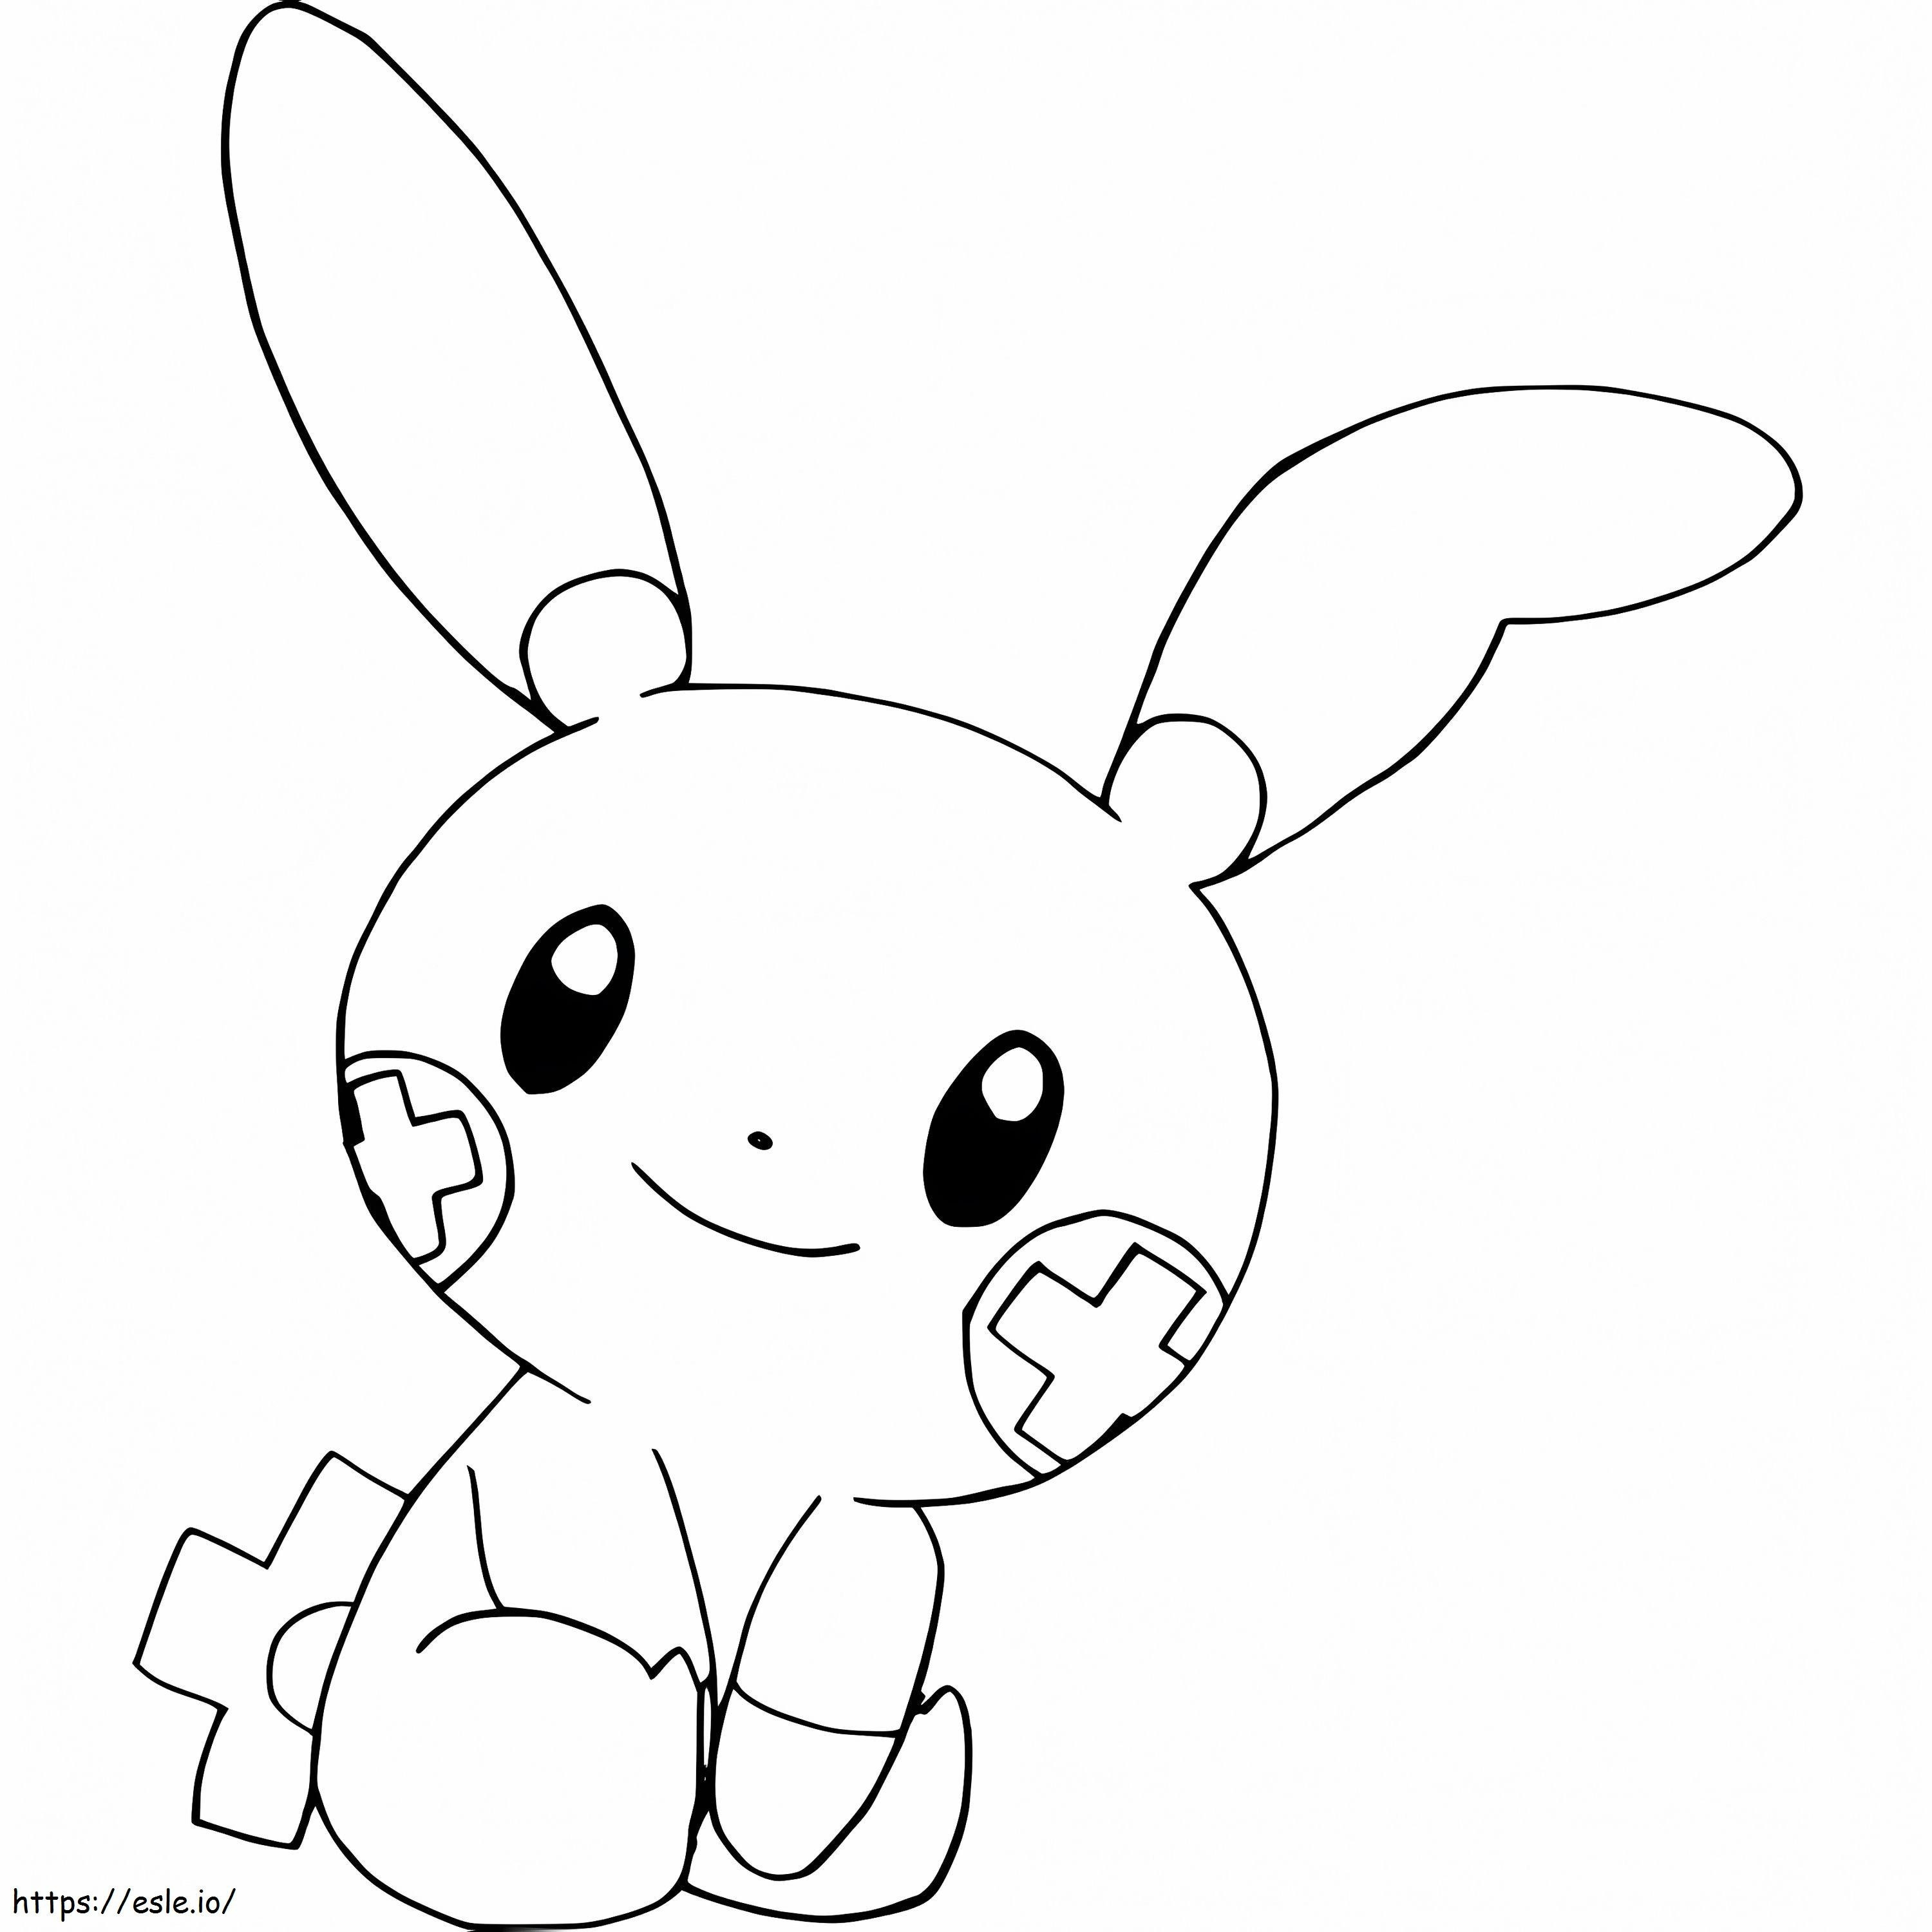 Coloriage Adorable Pokémon Plusle à imprimer dessin